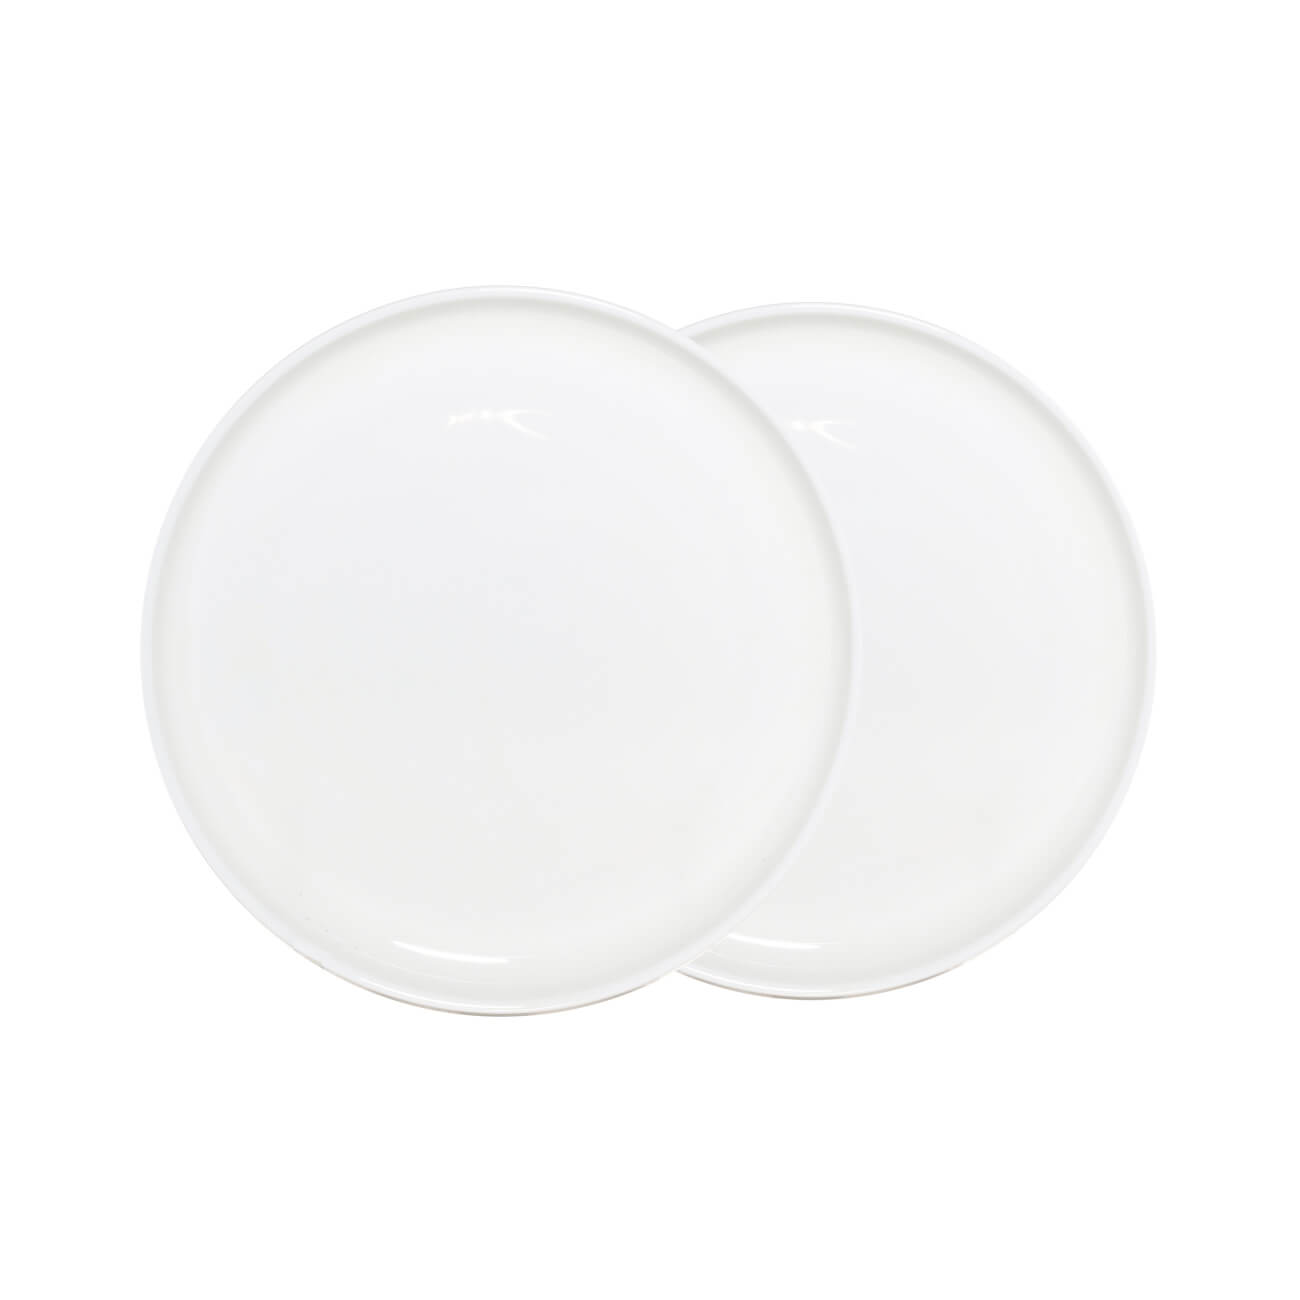 Тарелка десертная, 20 см, 2 шт, фарфор F, белая, Ideal white тарелка десертная 20 см 2 шт фарфор f белая ideal white